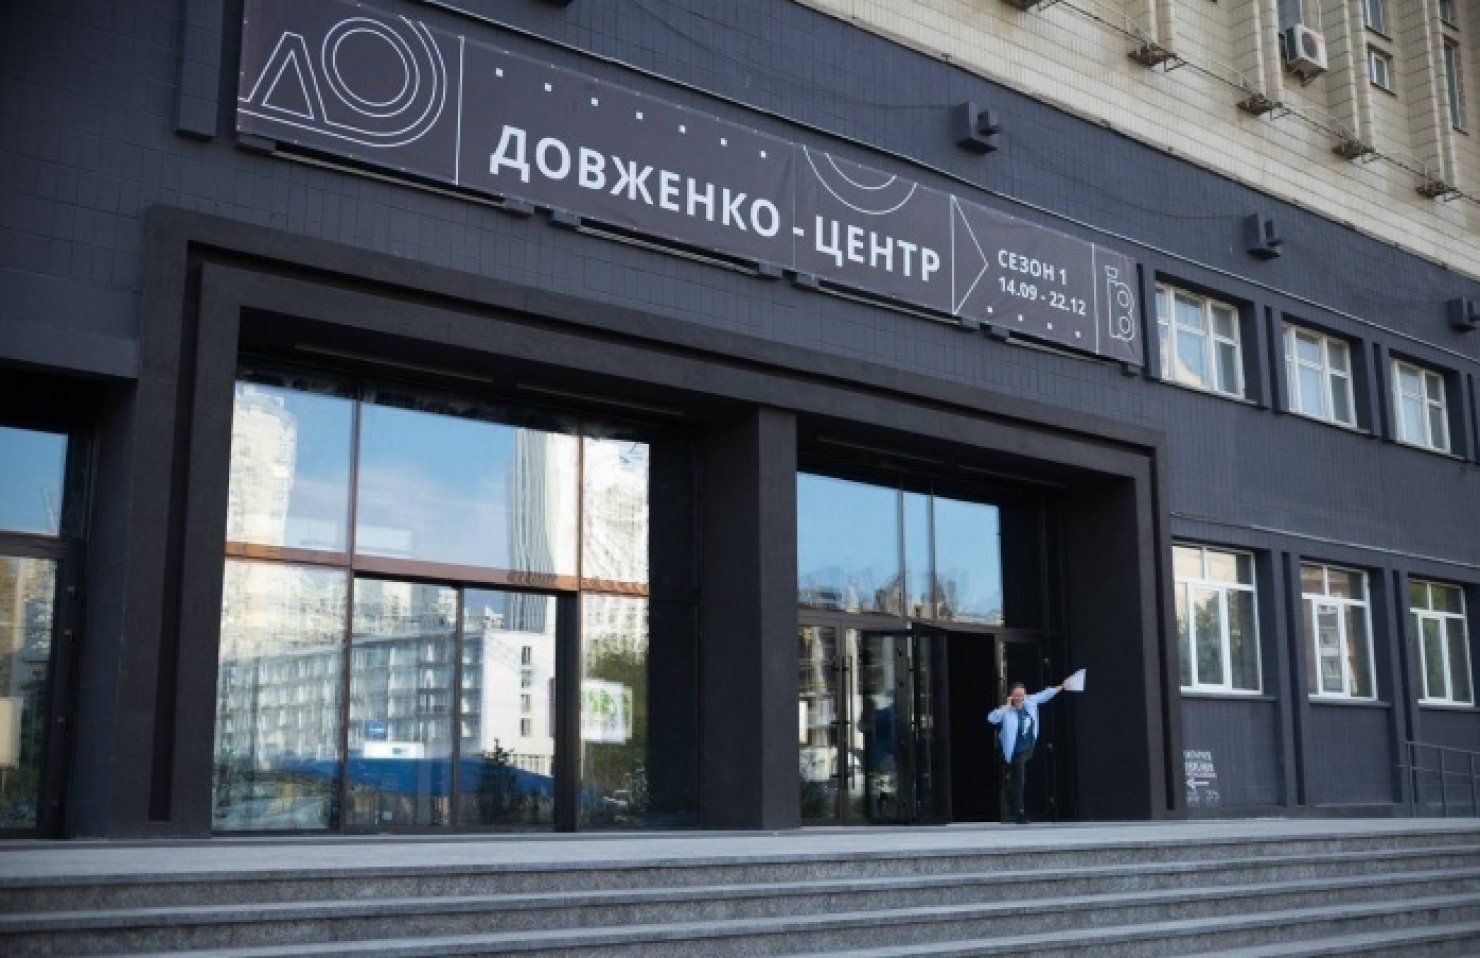 Кабмін закликають скасувати реорганізацію Довженко-центру